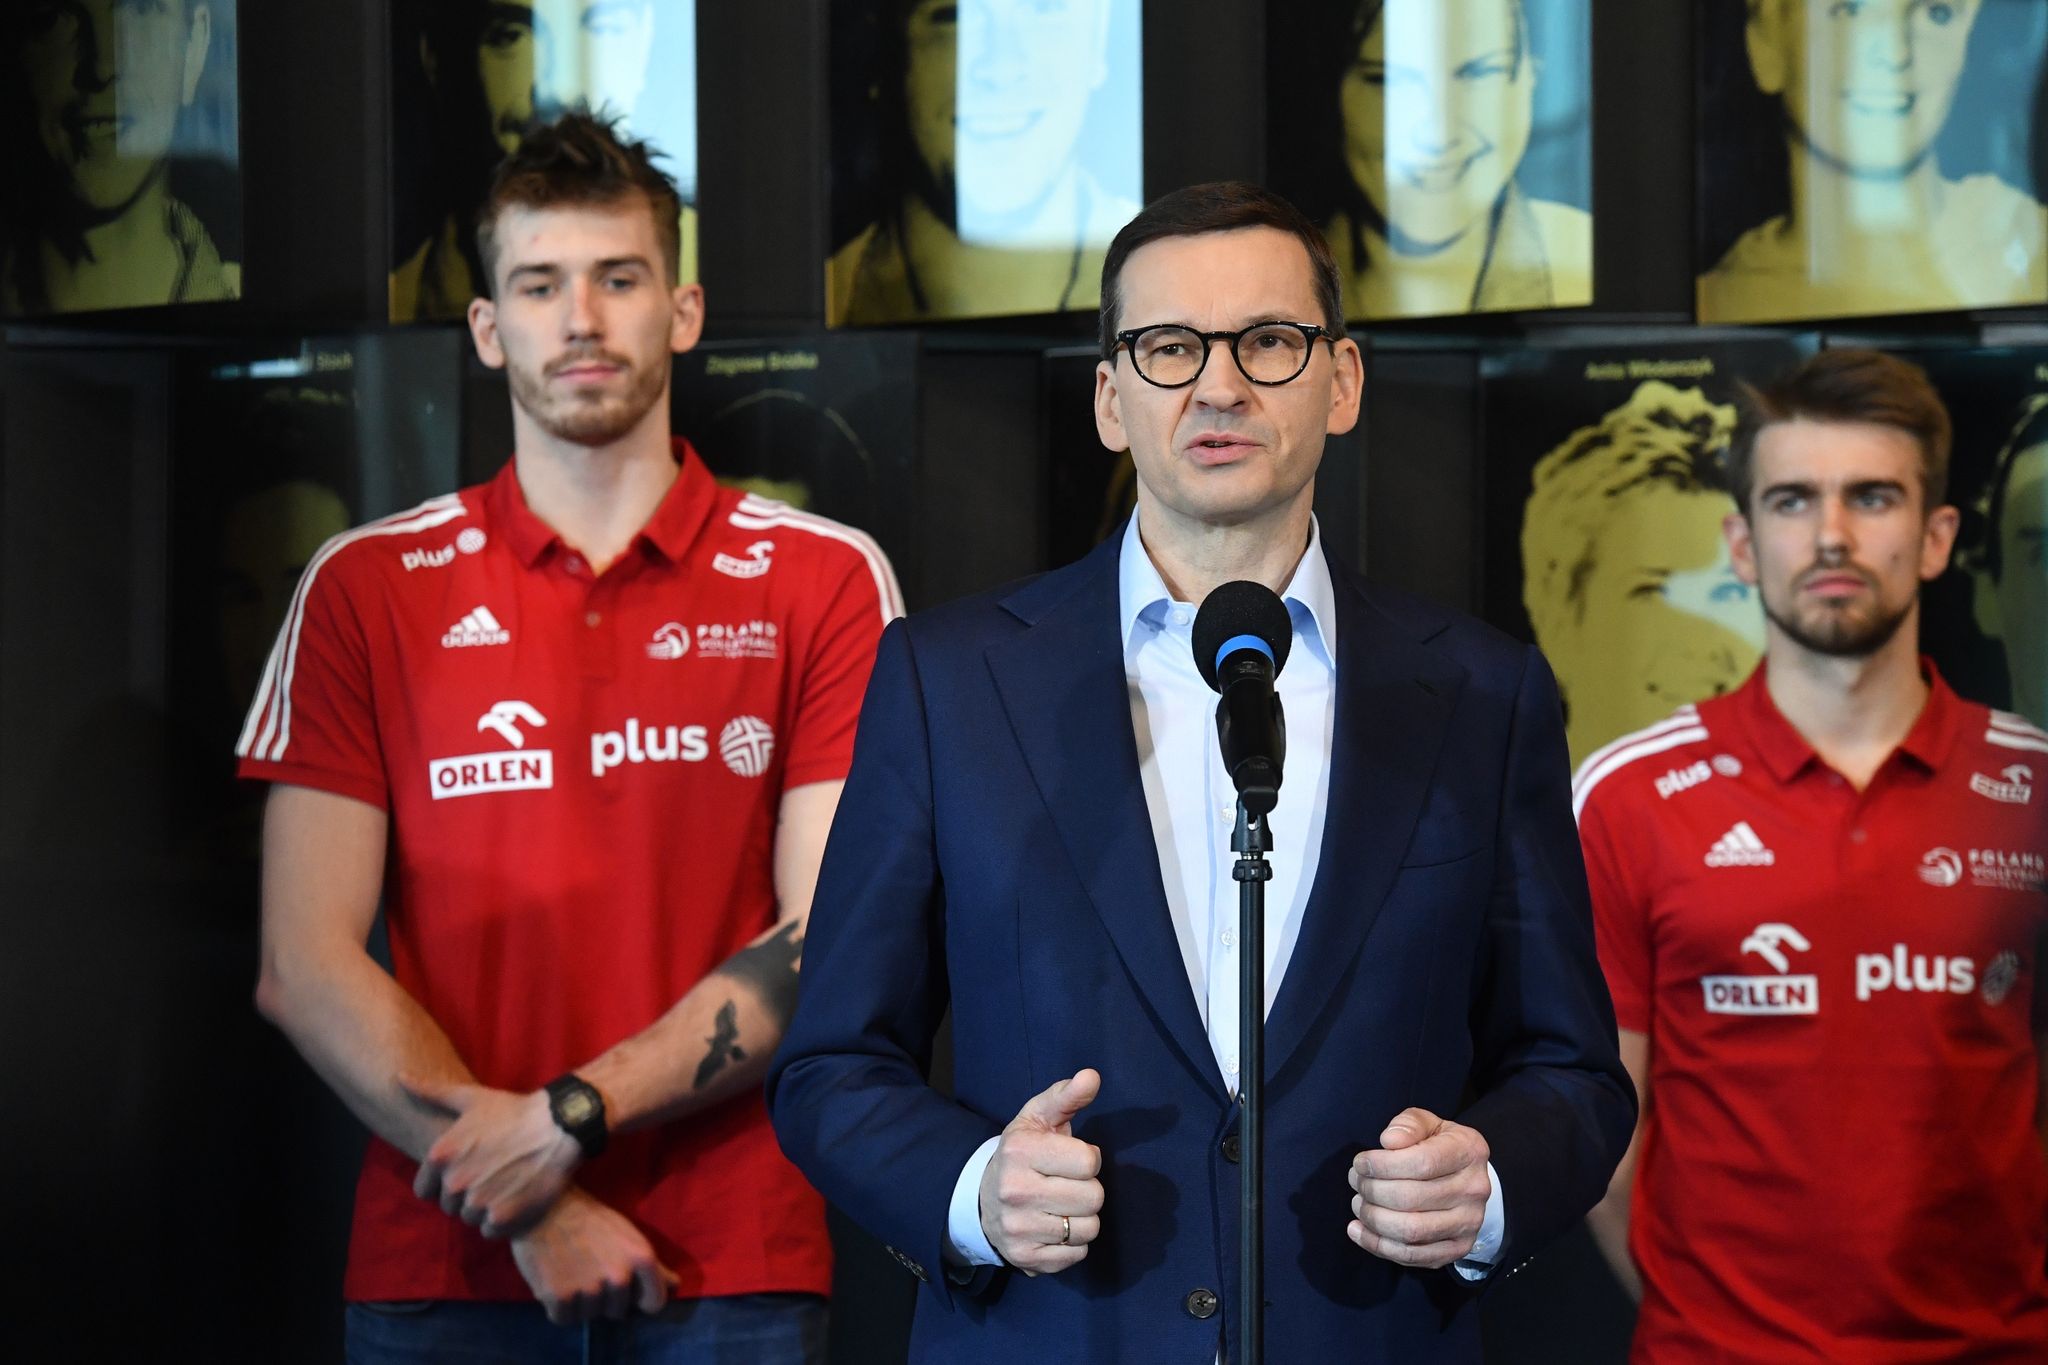 Polens Ministerpräsident Mateusz Morawiecki gab auf einer PK bekannt, dass Polen die Volleyball-WM gemeinsam mit Slowenien ausrichten wird.